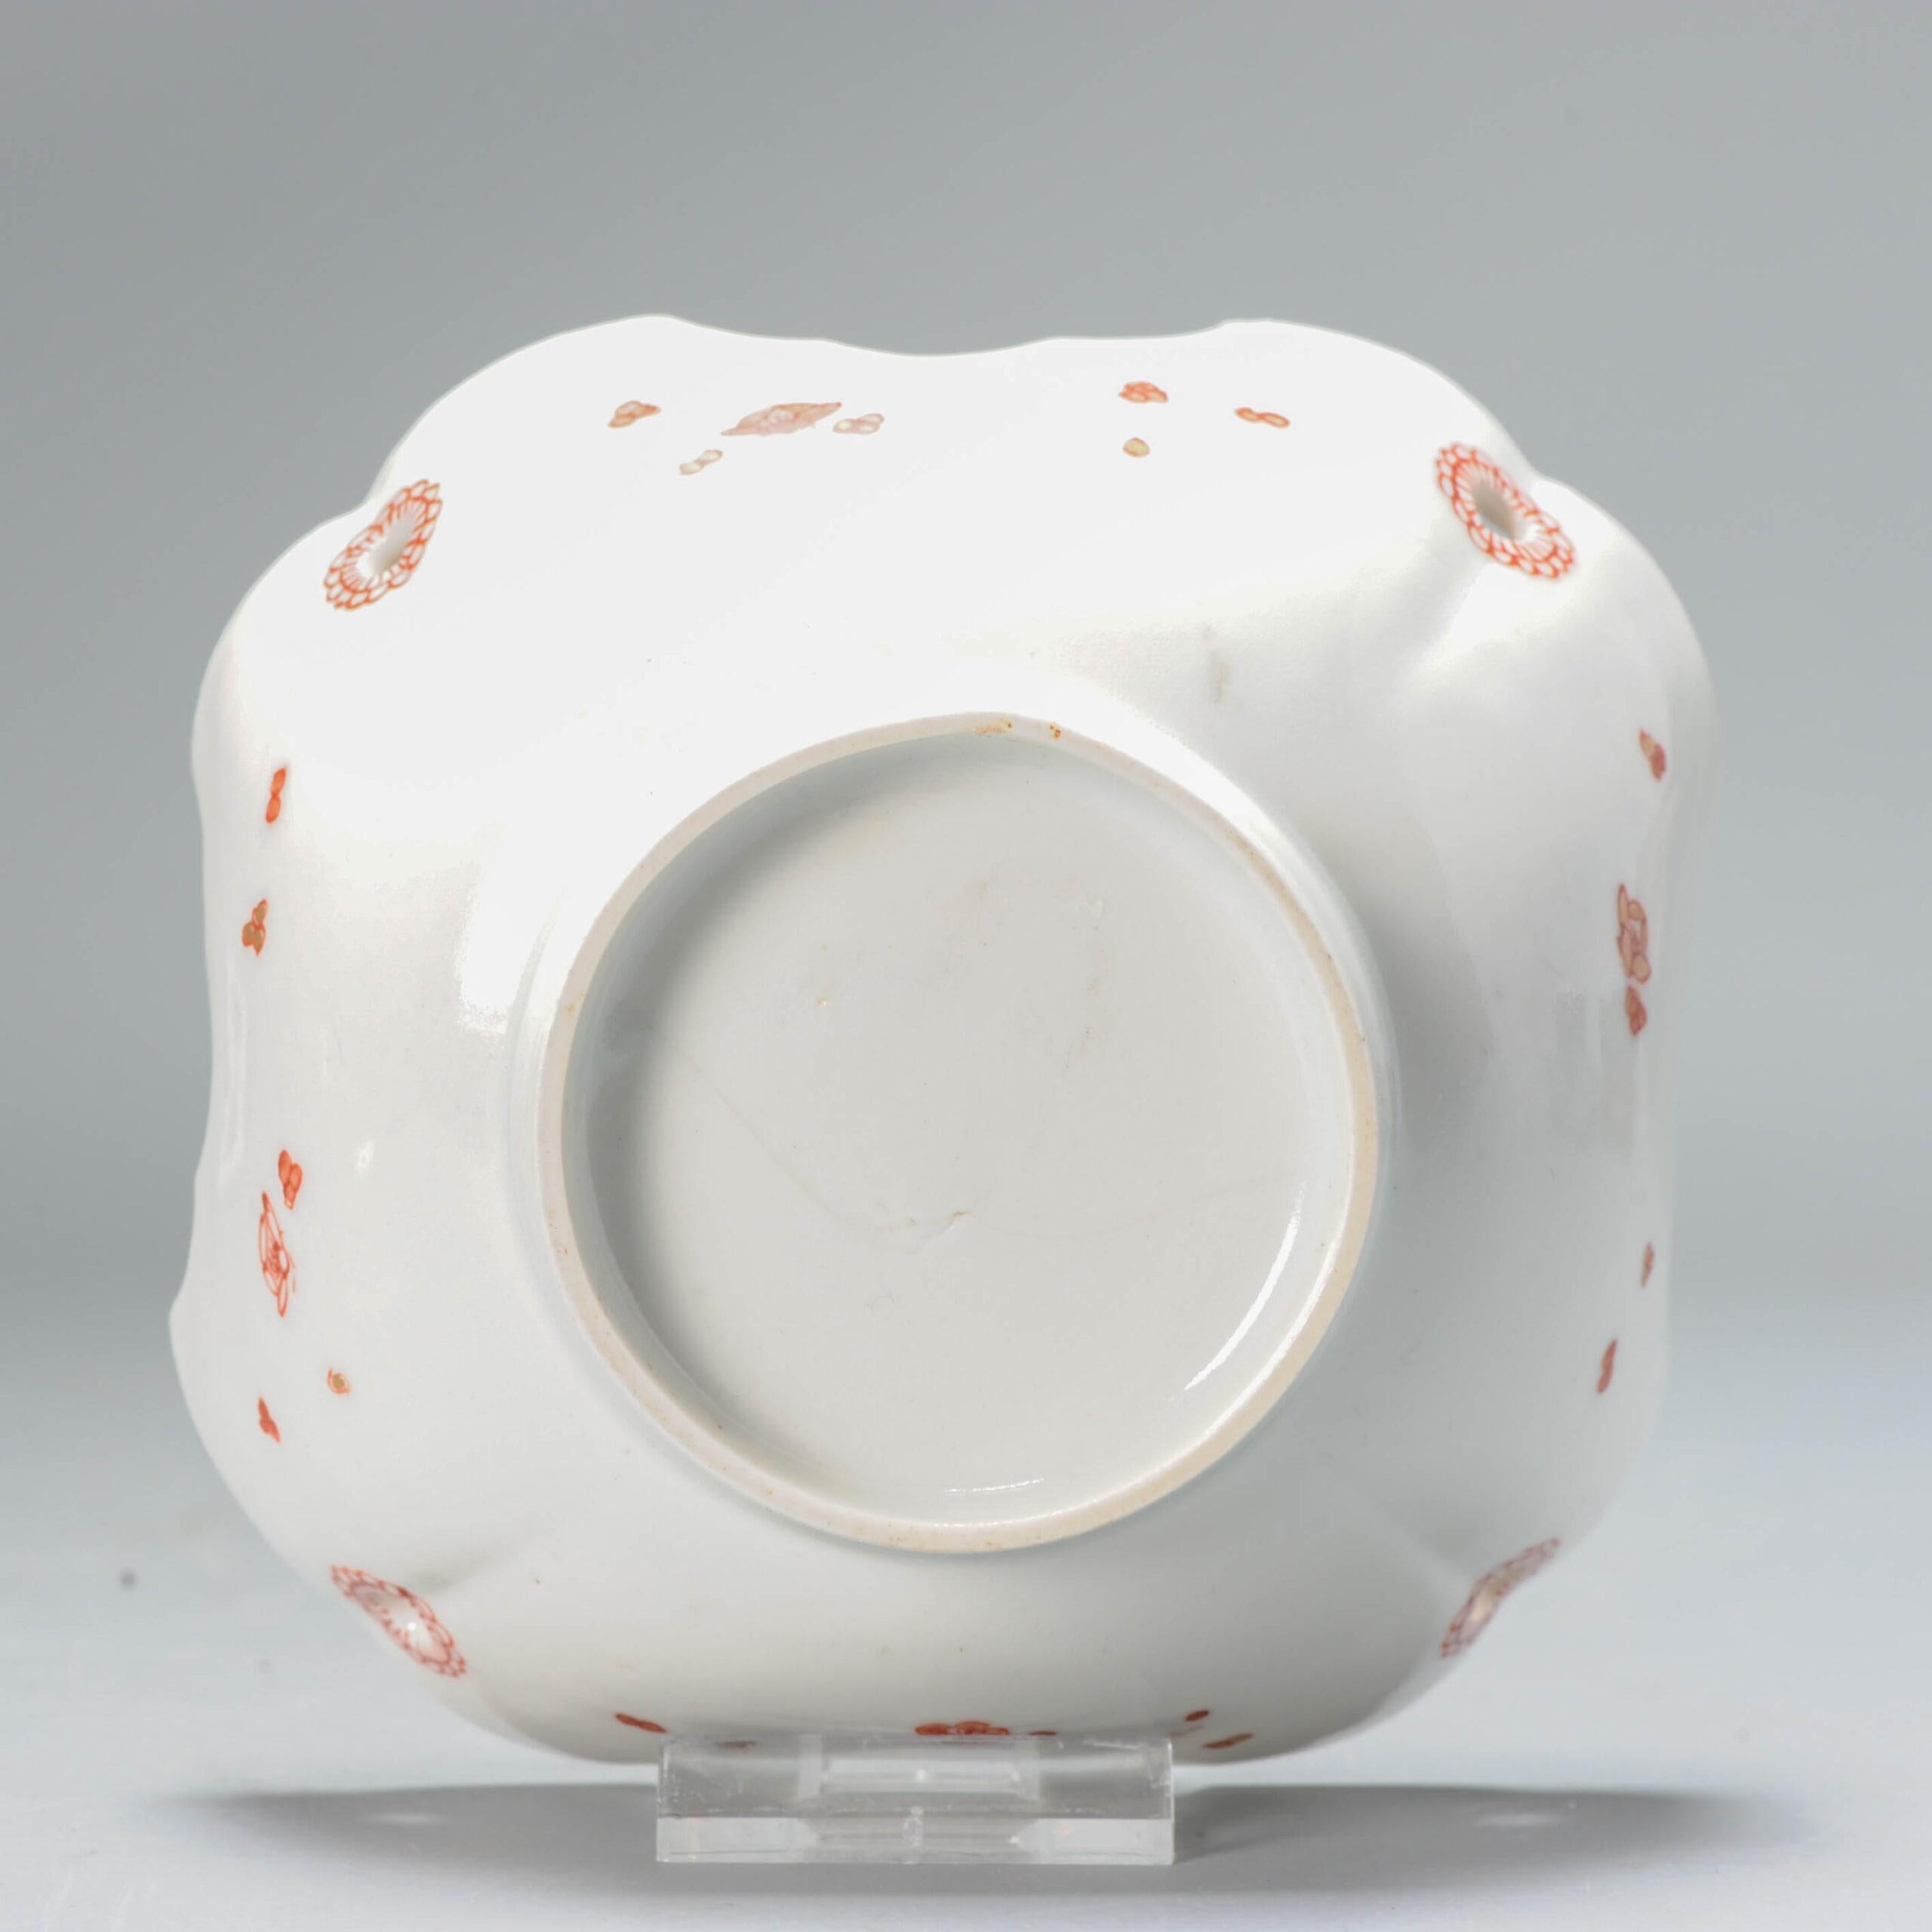 shibata japan porcelain